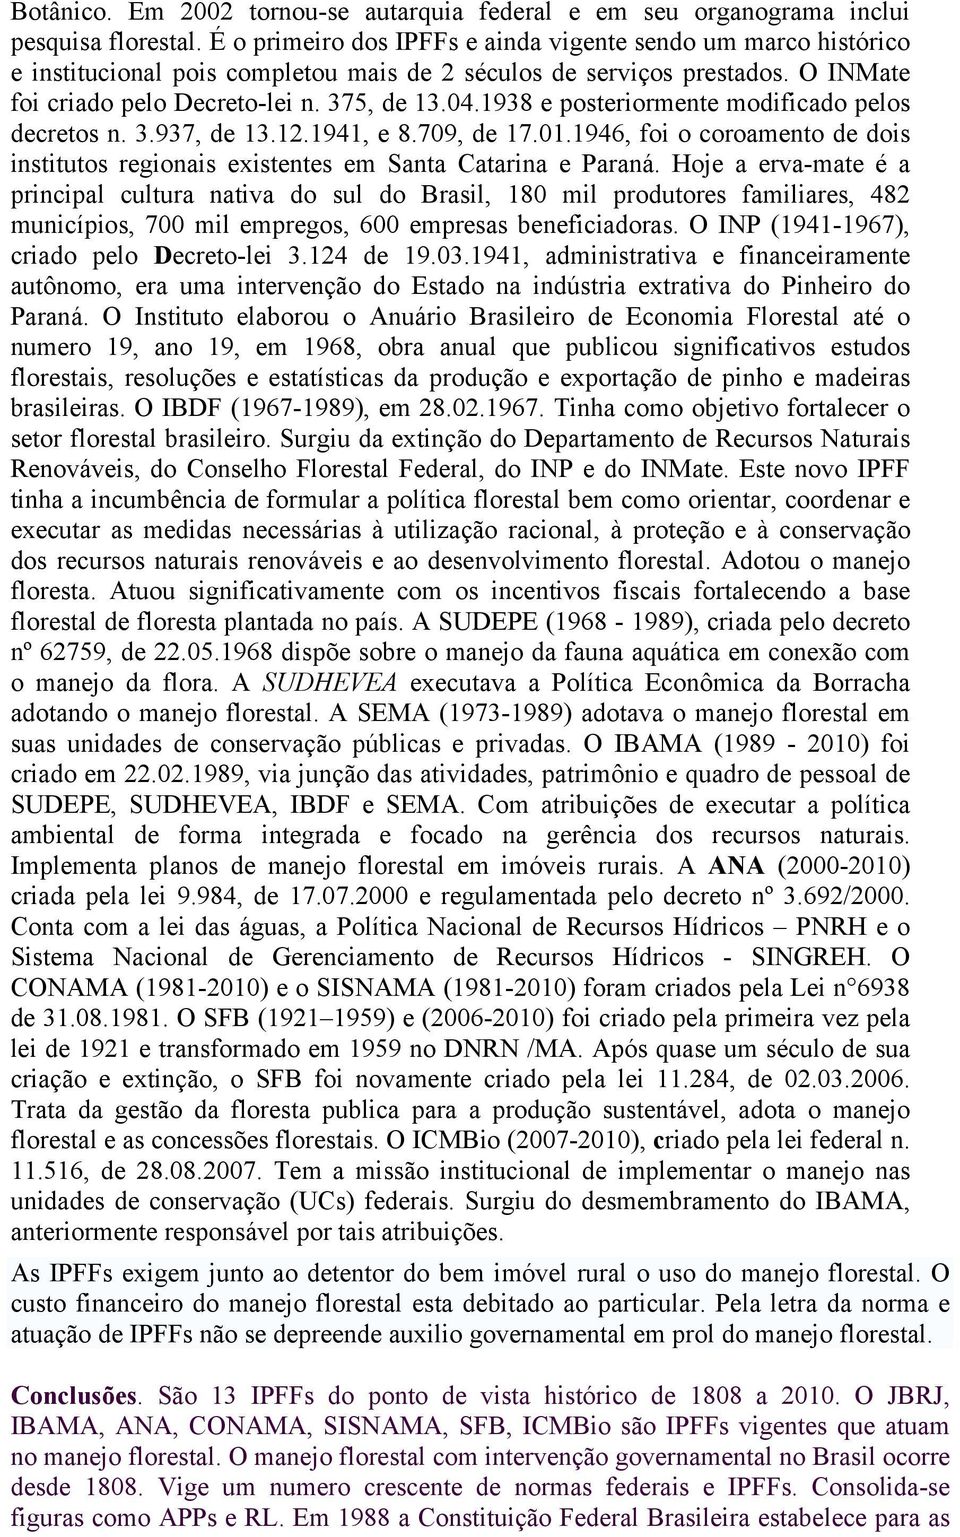 1938 e posteriormente modificado pelos decretos n. 3.937, de 13.12.1941, e 8.709, de 17.01.1946, foi o coroamento de dois institutos regionais existentes em Santa Catarina e Paraná.